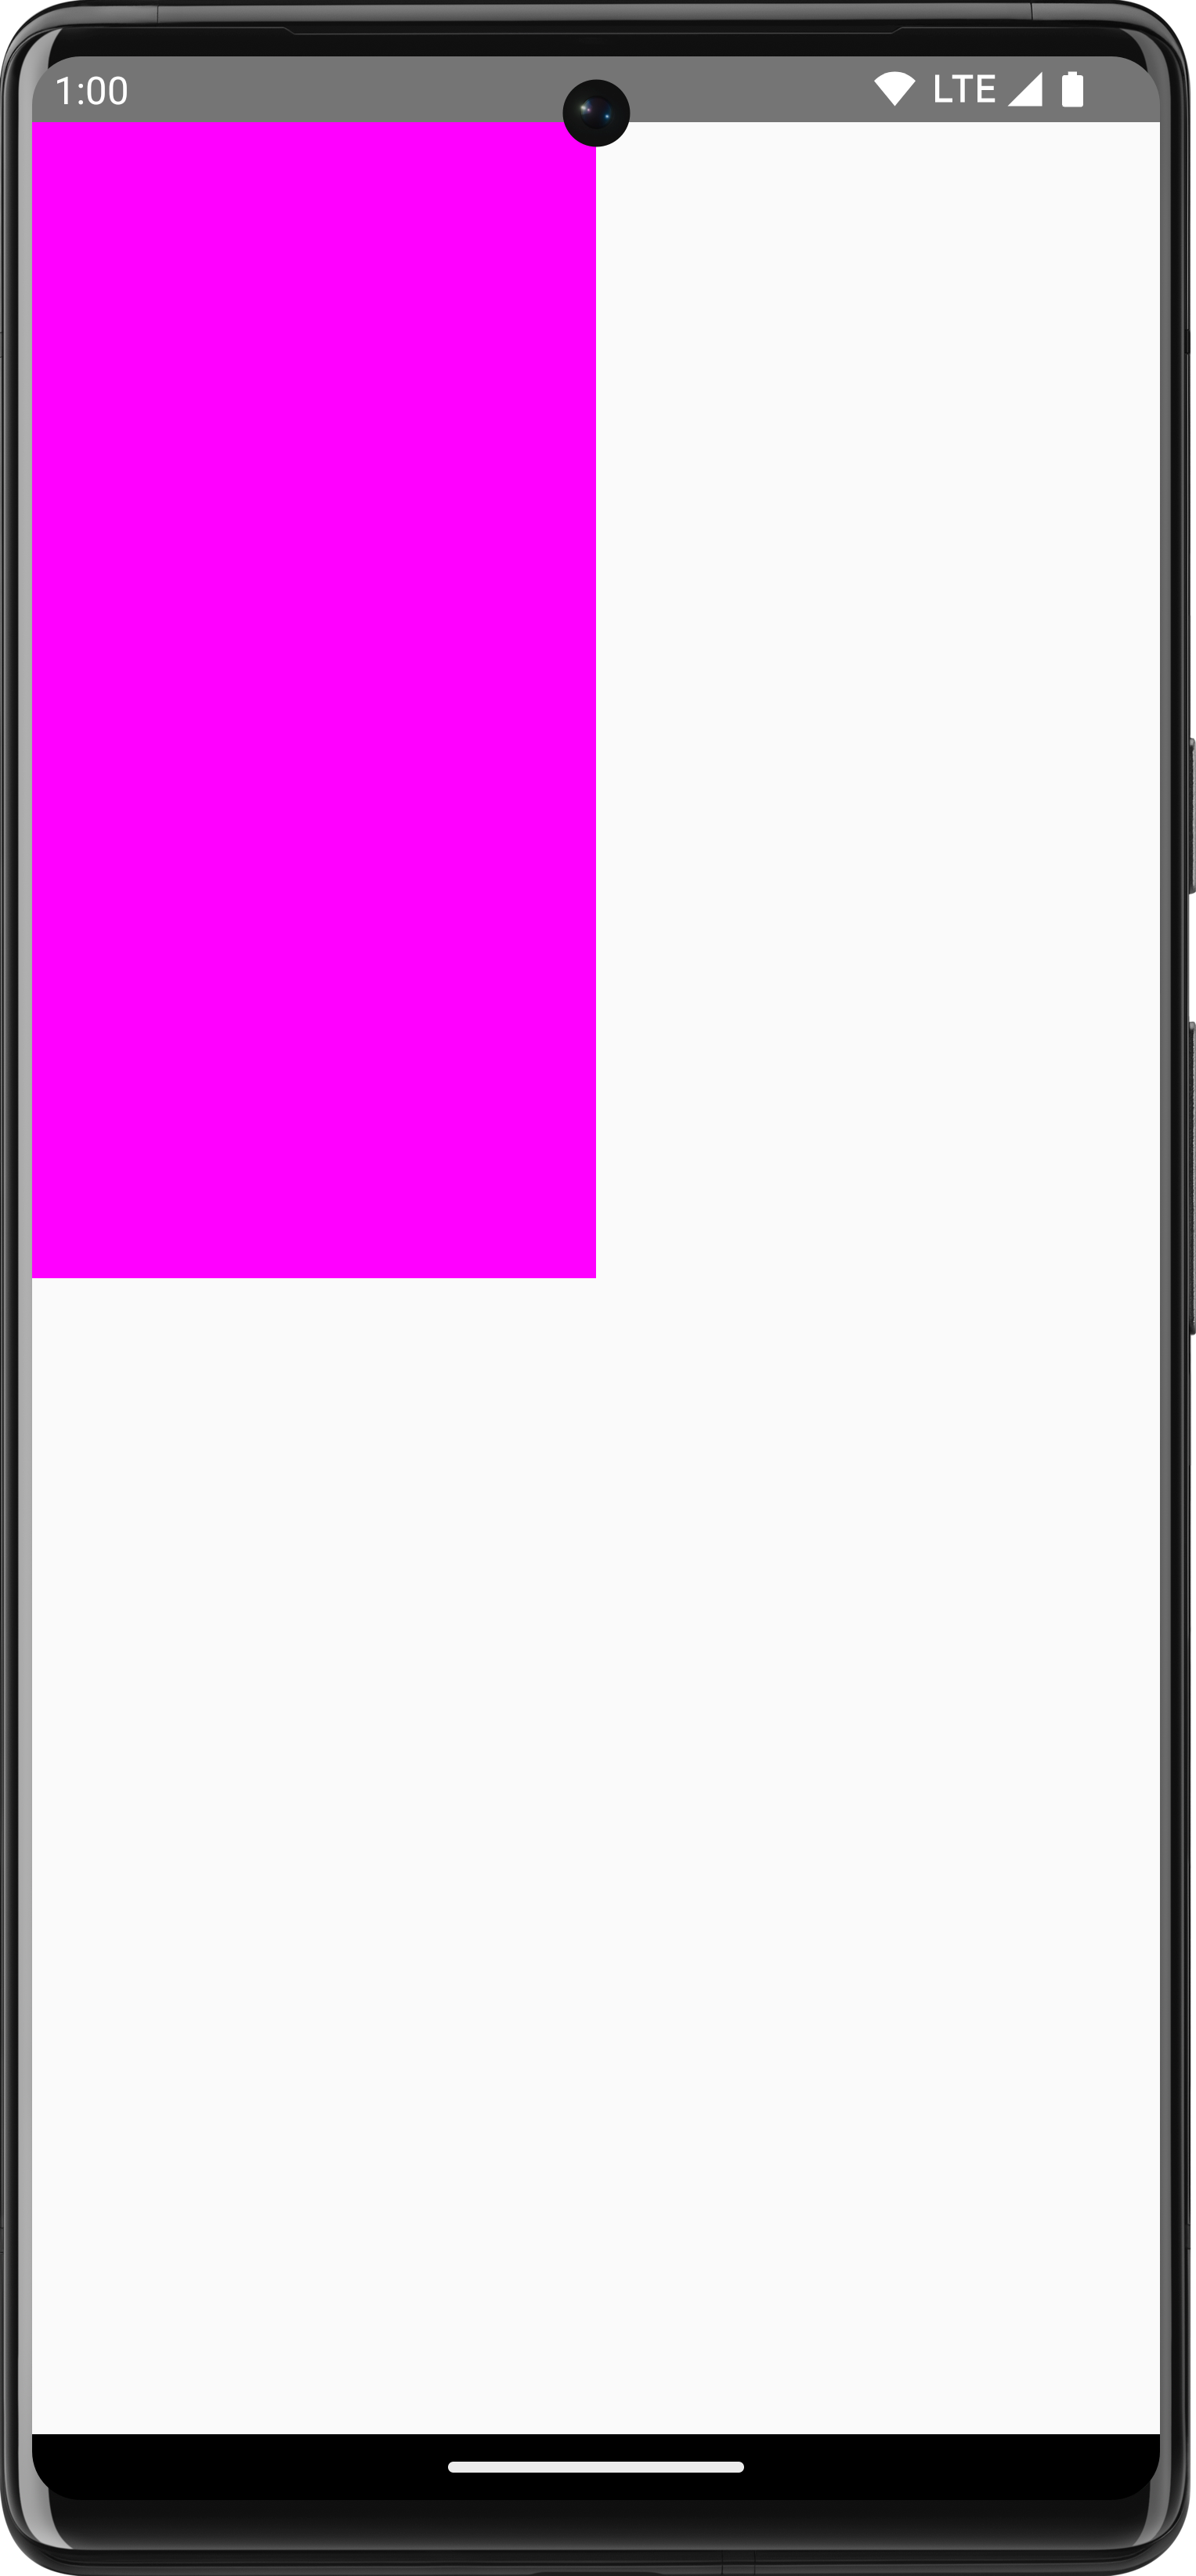 सफ़ेद बैकग्राउंड पर बना गुलाबी रेक्टैंगल, जो स्क्रीन का एक चौथाई हिस्सा भर लेता है